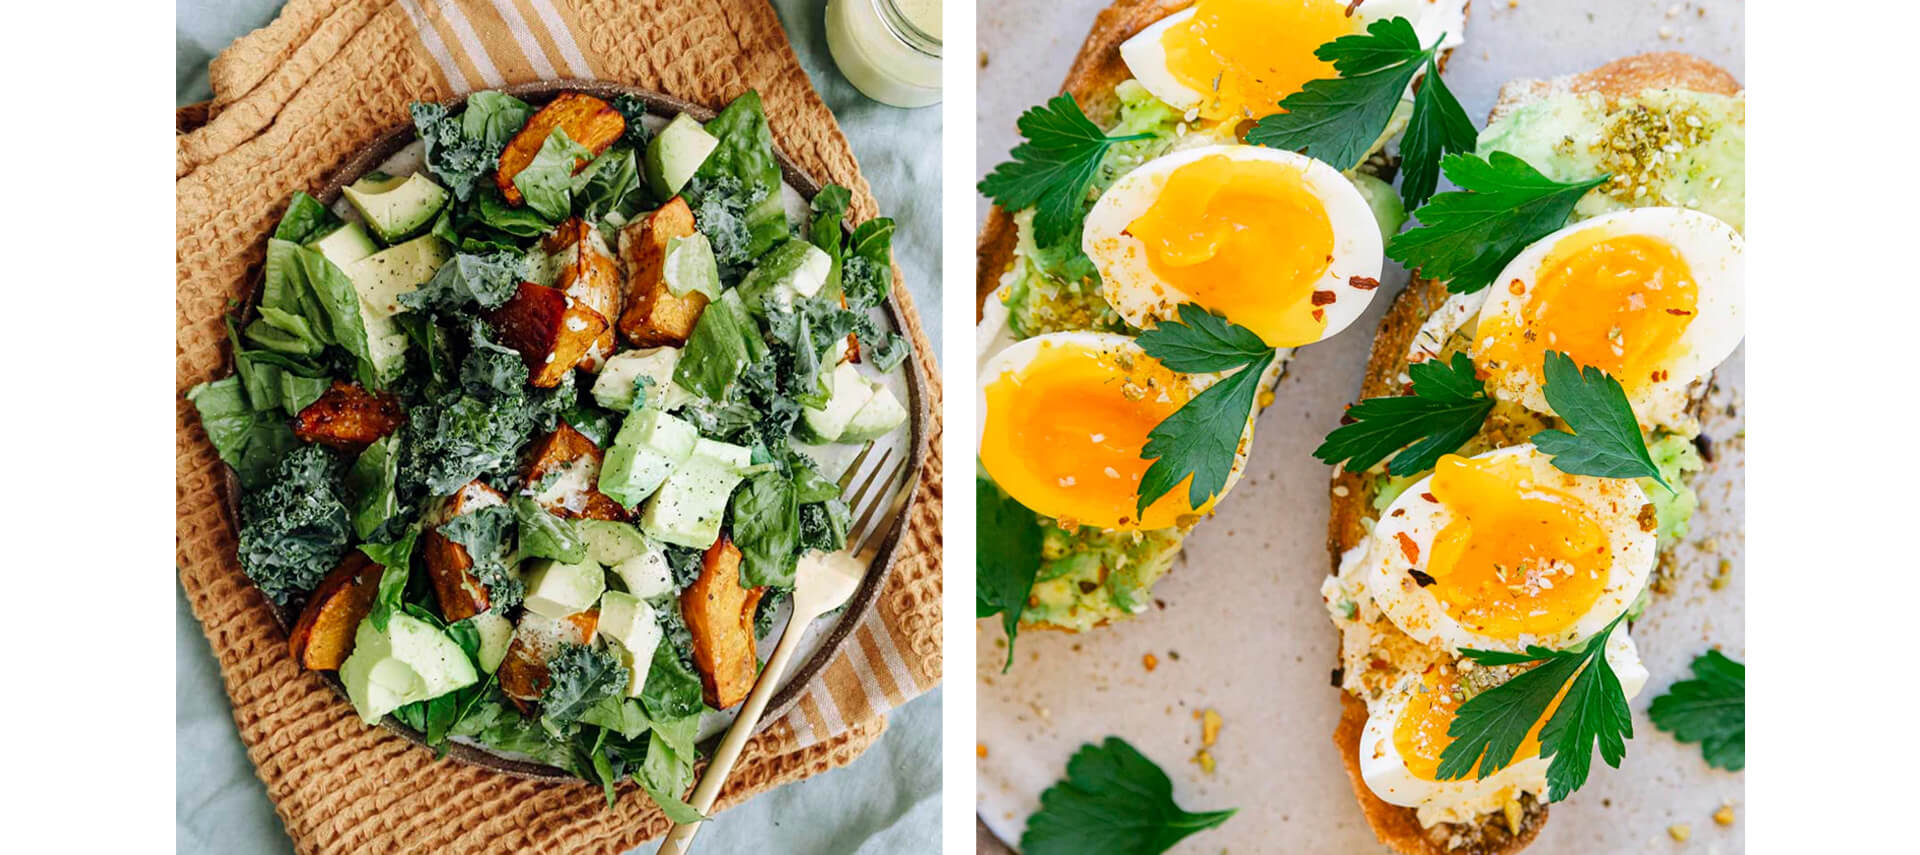 Energy recipes - gut salad & eggs on toast